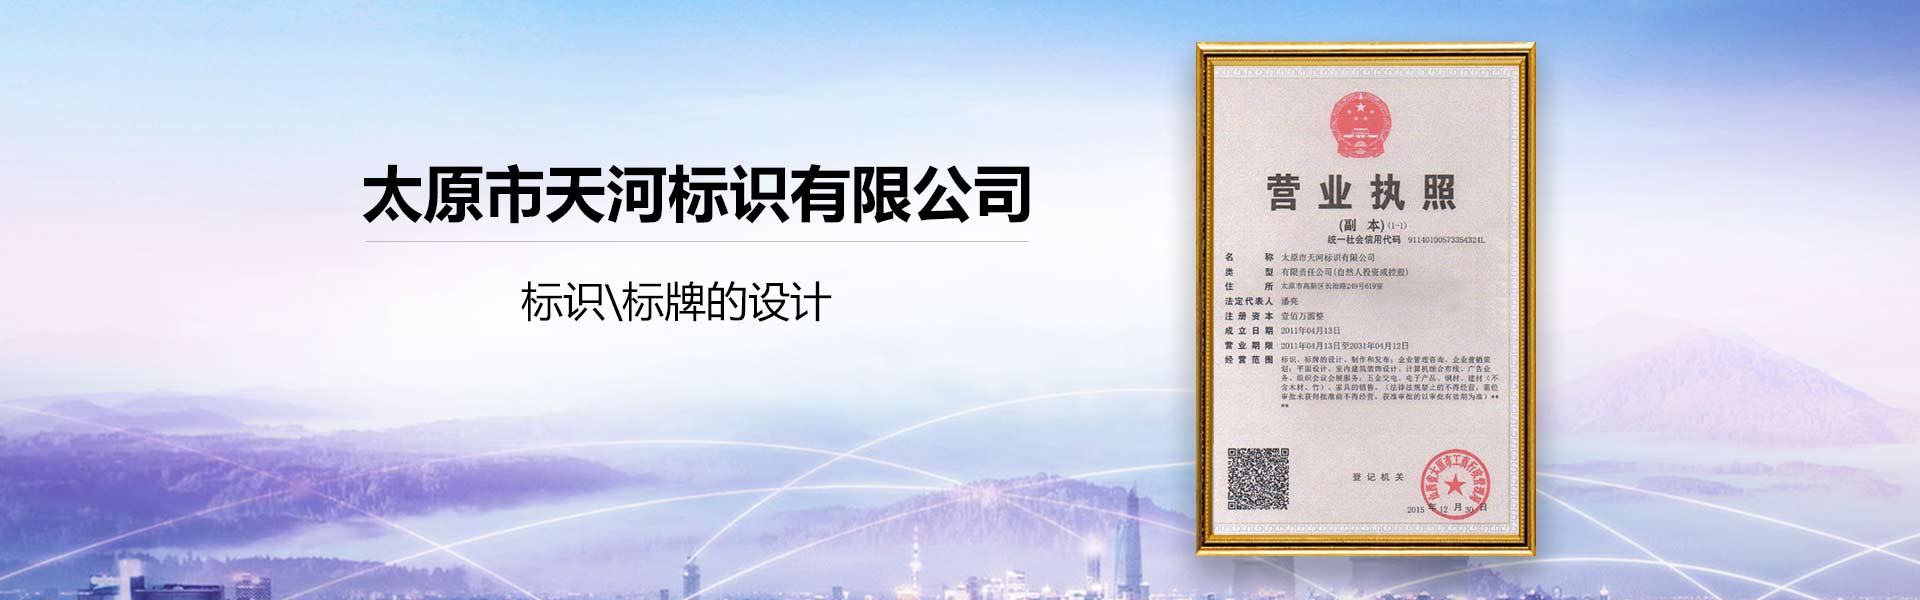 关于当前产品bb贝博平台登·(中国)官方网站的成功案例等相关图片